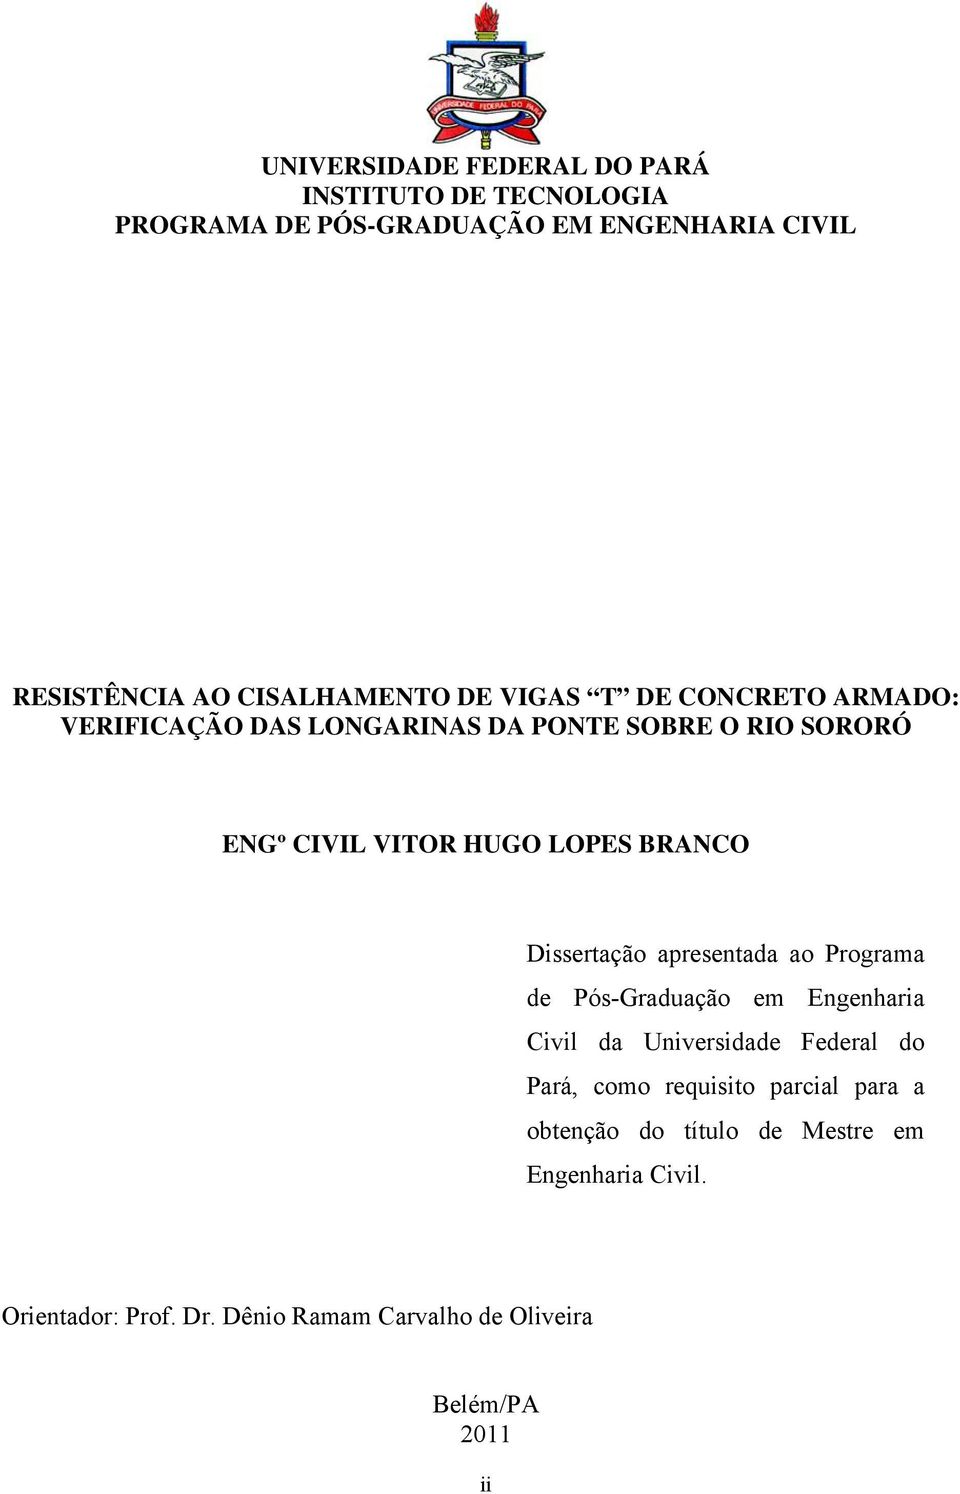 Dissertação apresentada ao Programa de Pós-Graduação em Engenharia Civil da Universidade Federal do Pará, como requisito